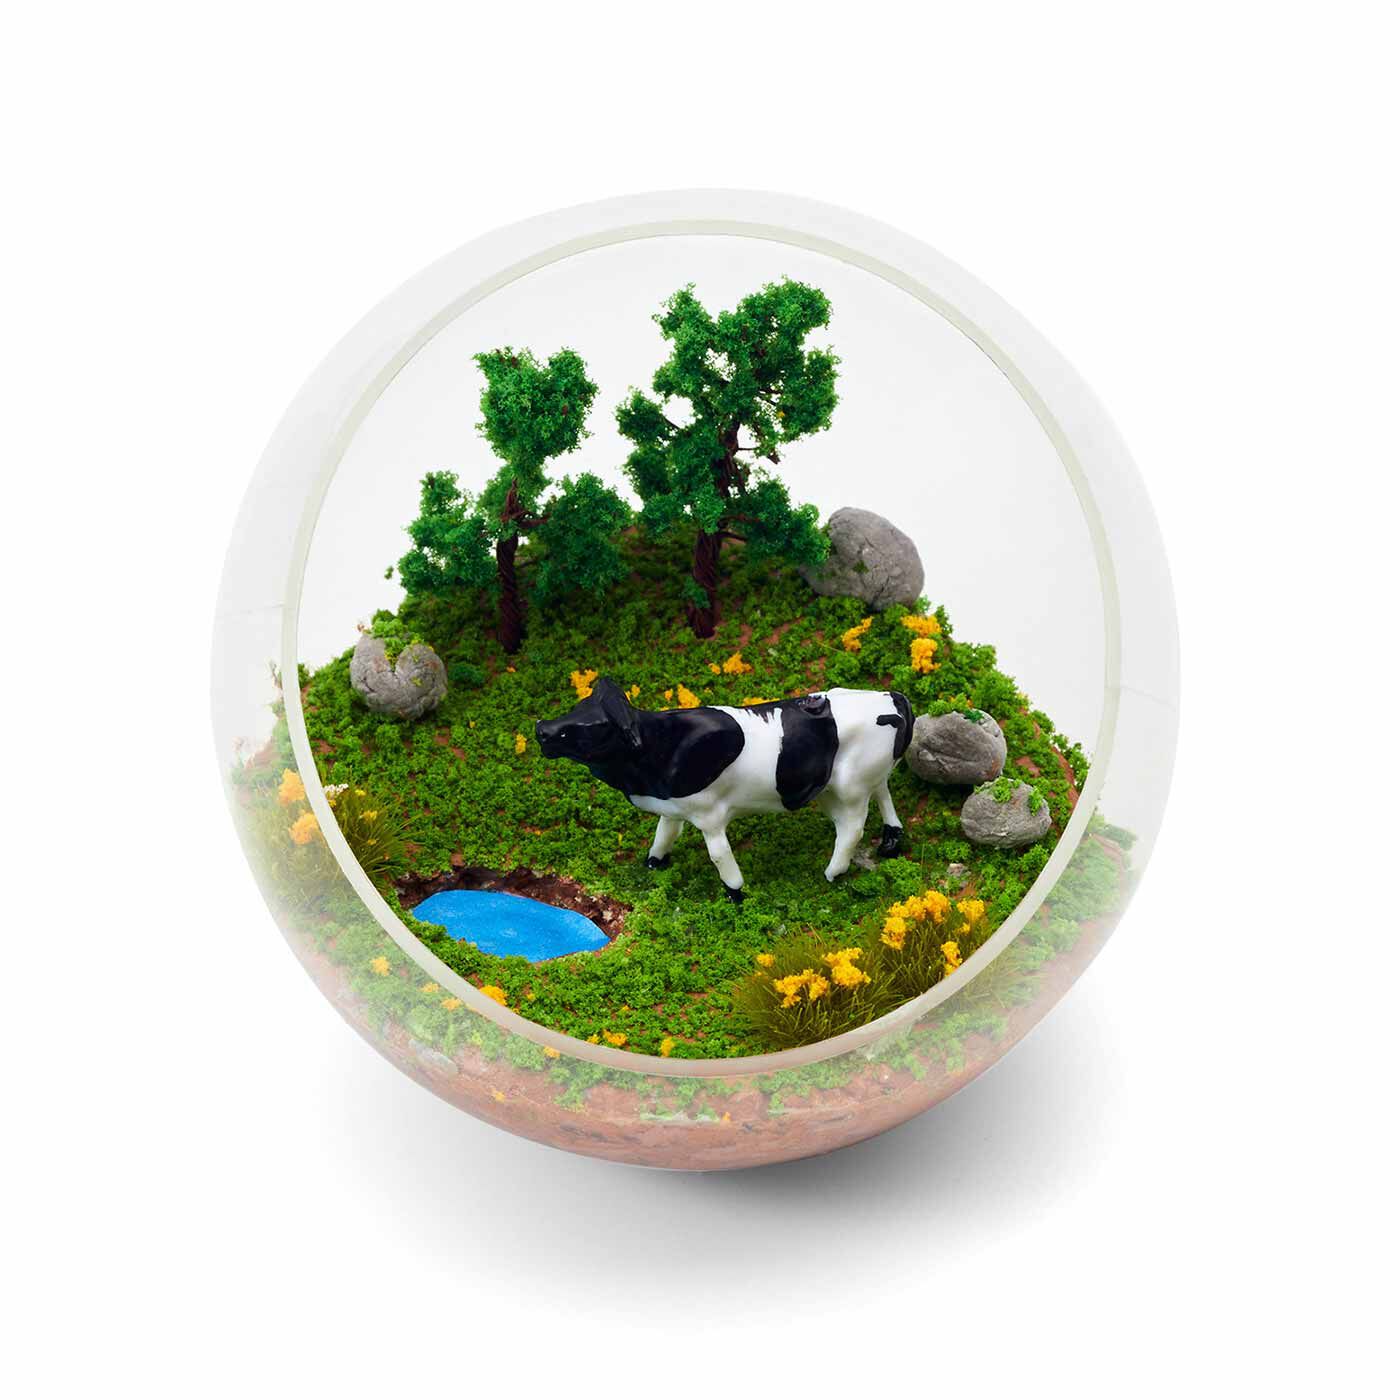 クチュリエ|手のひらサイズの小さなオアシス 草木の模型パーツで作るジオラマテラリウムの会|〈お気に入りの水飲み場〉